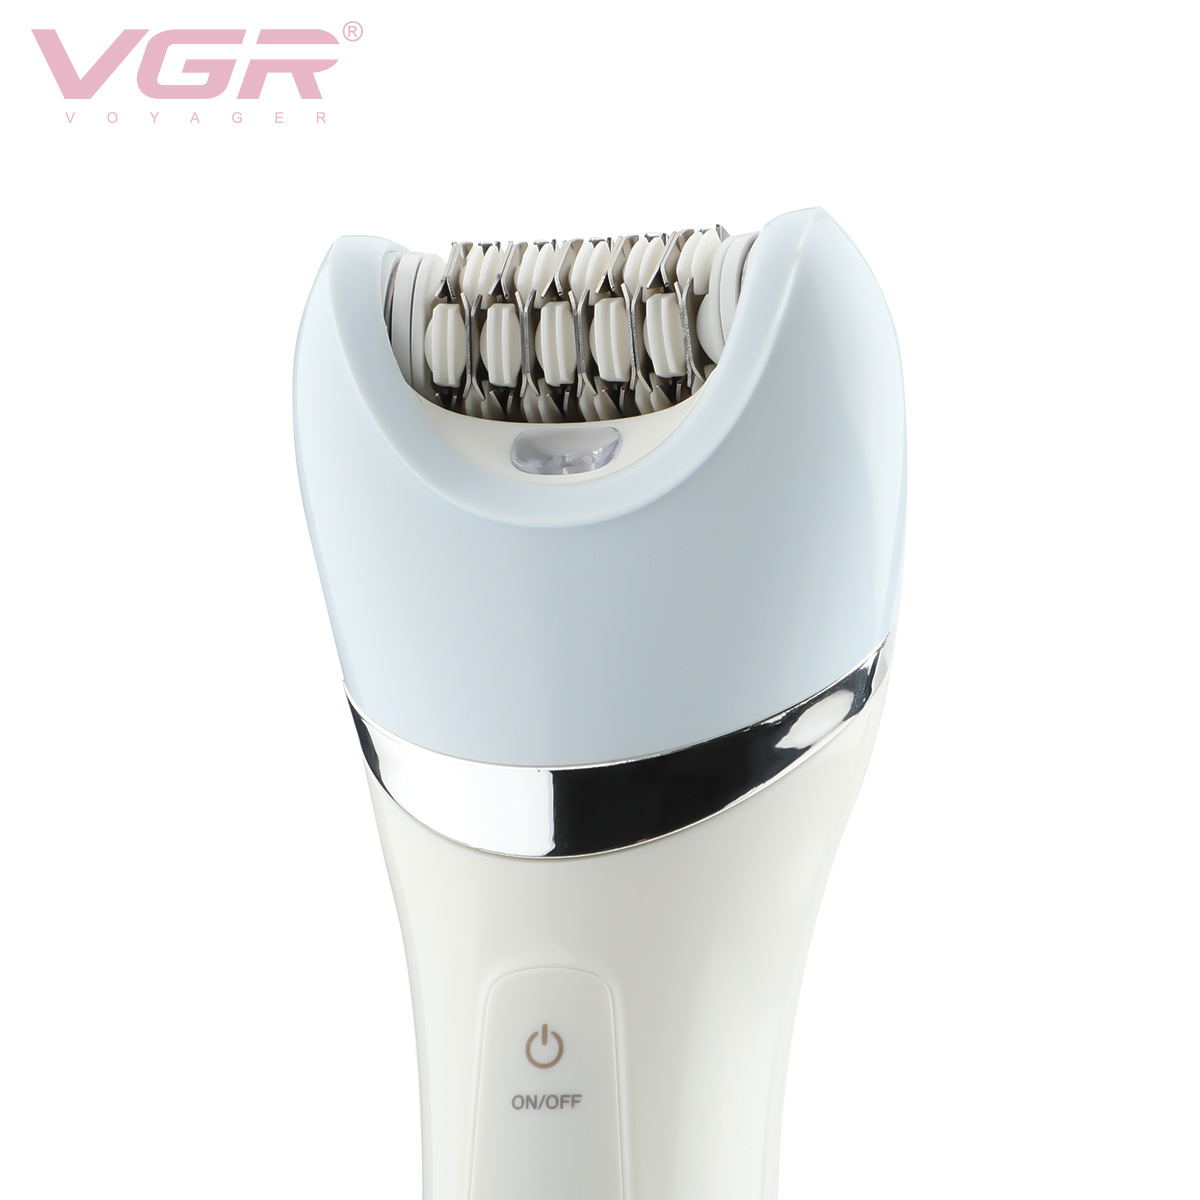 Máy cạo lông điện VGR Voyager V-703 đa năng 5 Trong 1 chống thấm nước với 2 tốc độ sử dụng - Hàng nhập khẩu